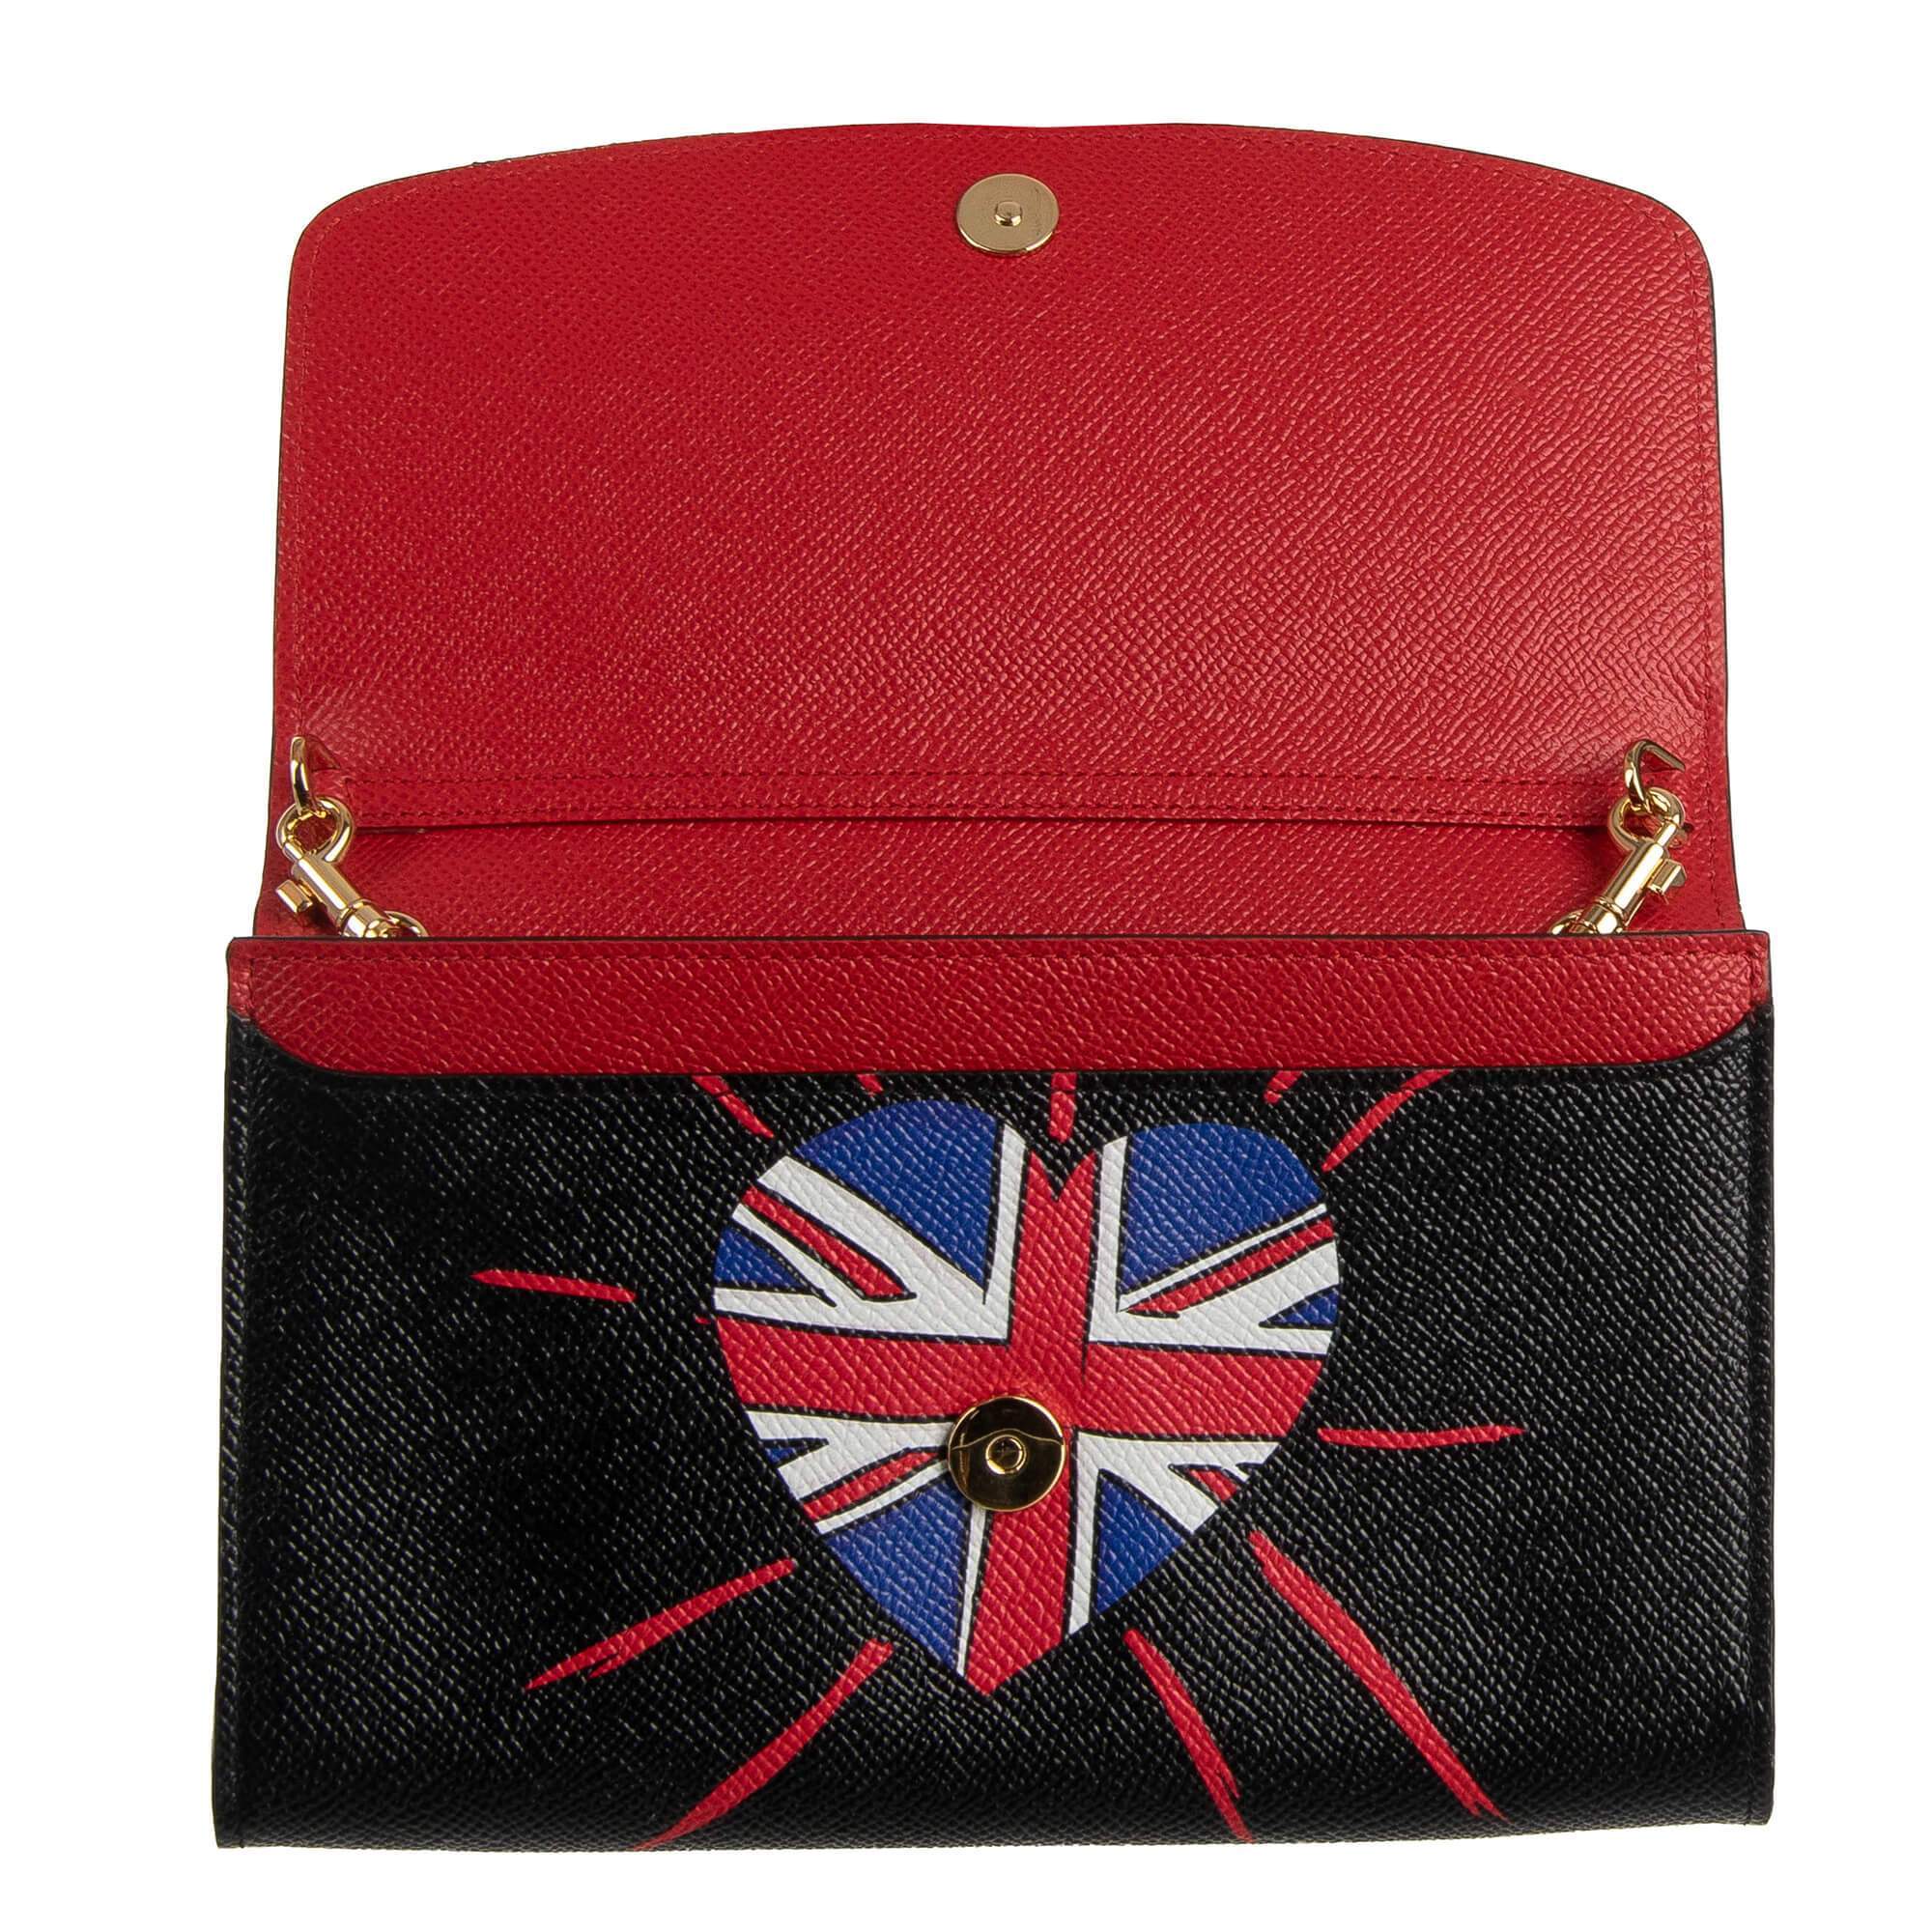 Dolce & Gabbana DG Loves London Shoulder Bag